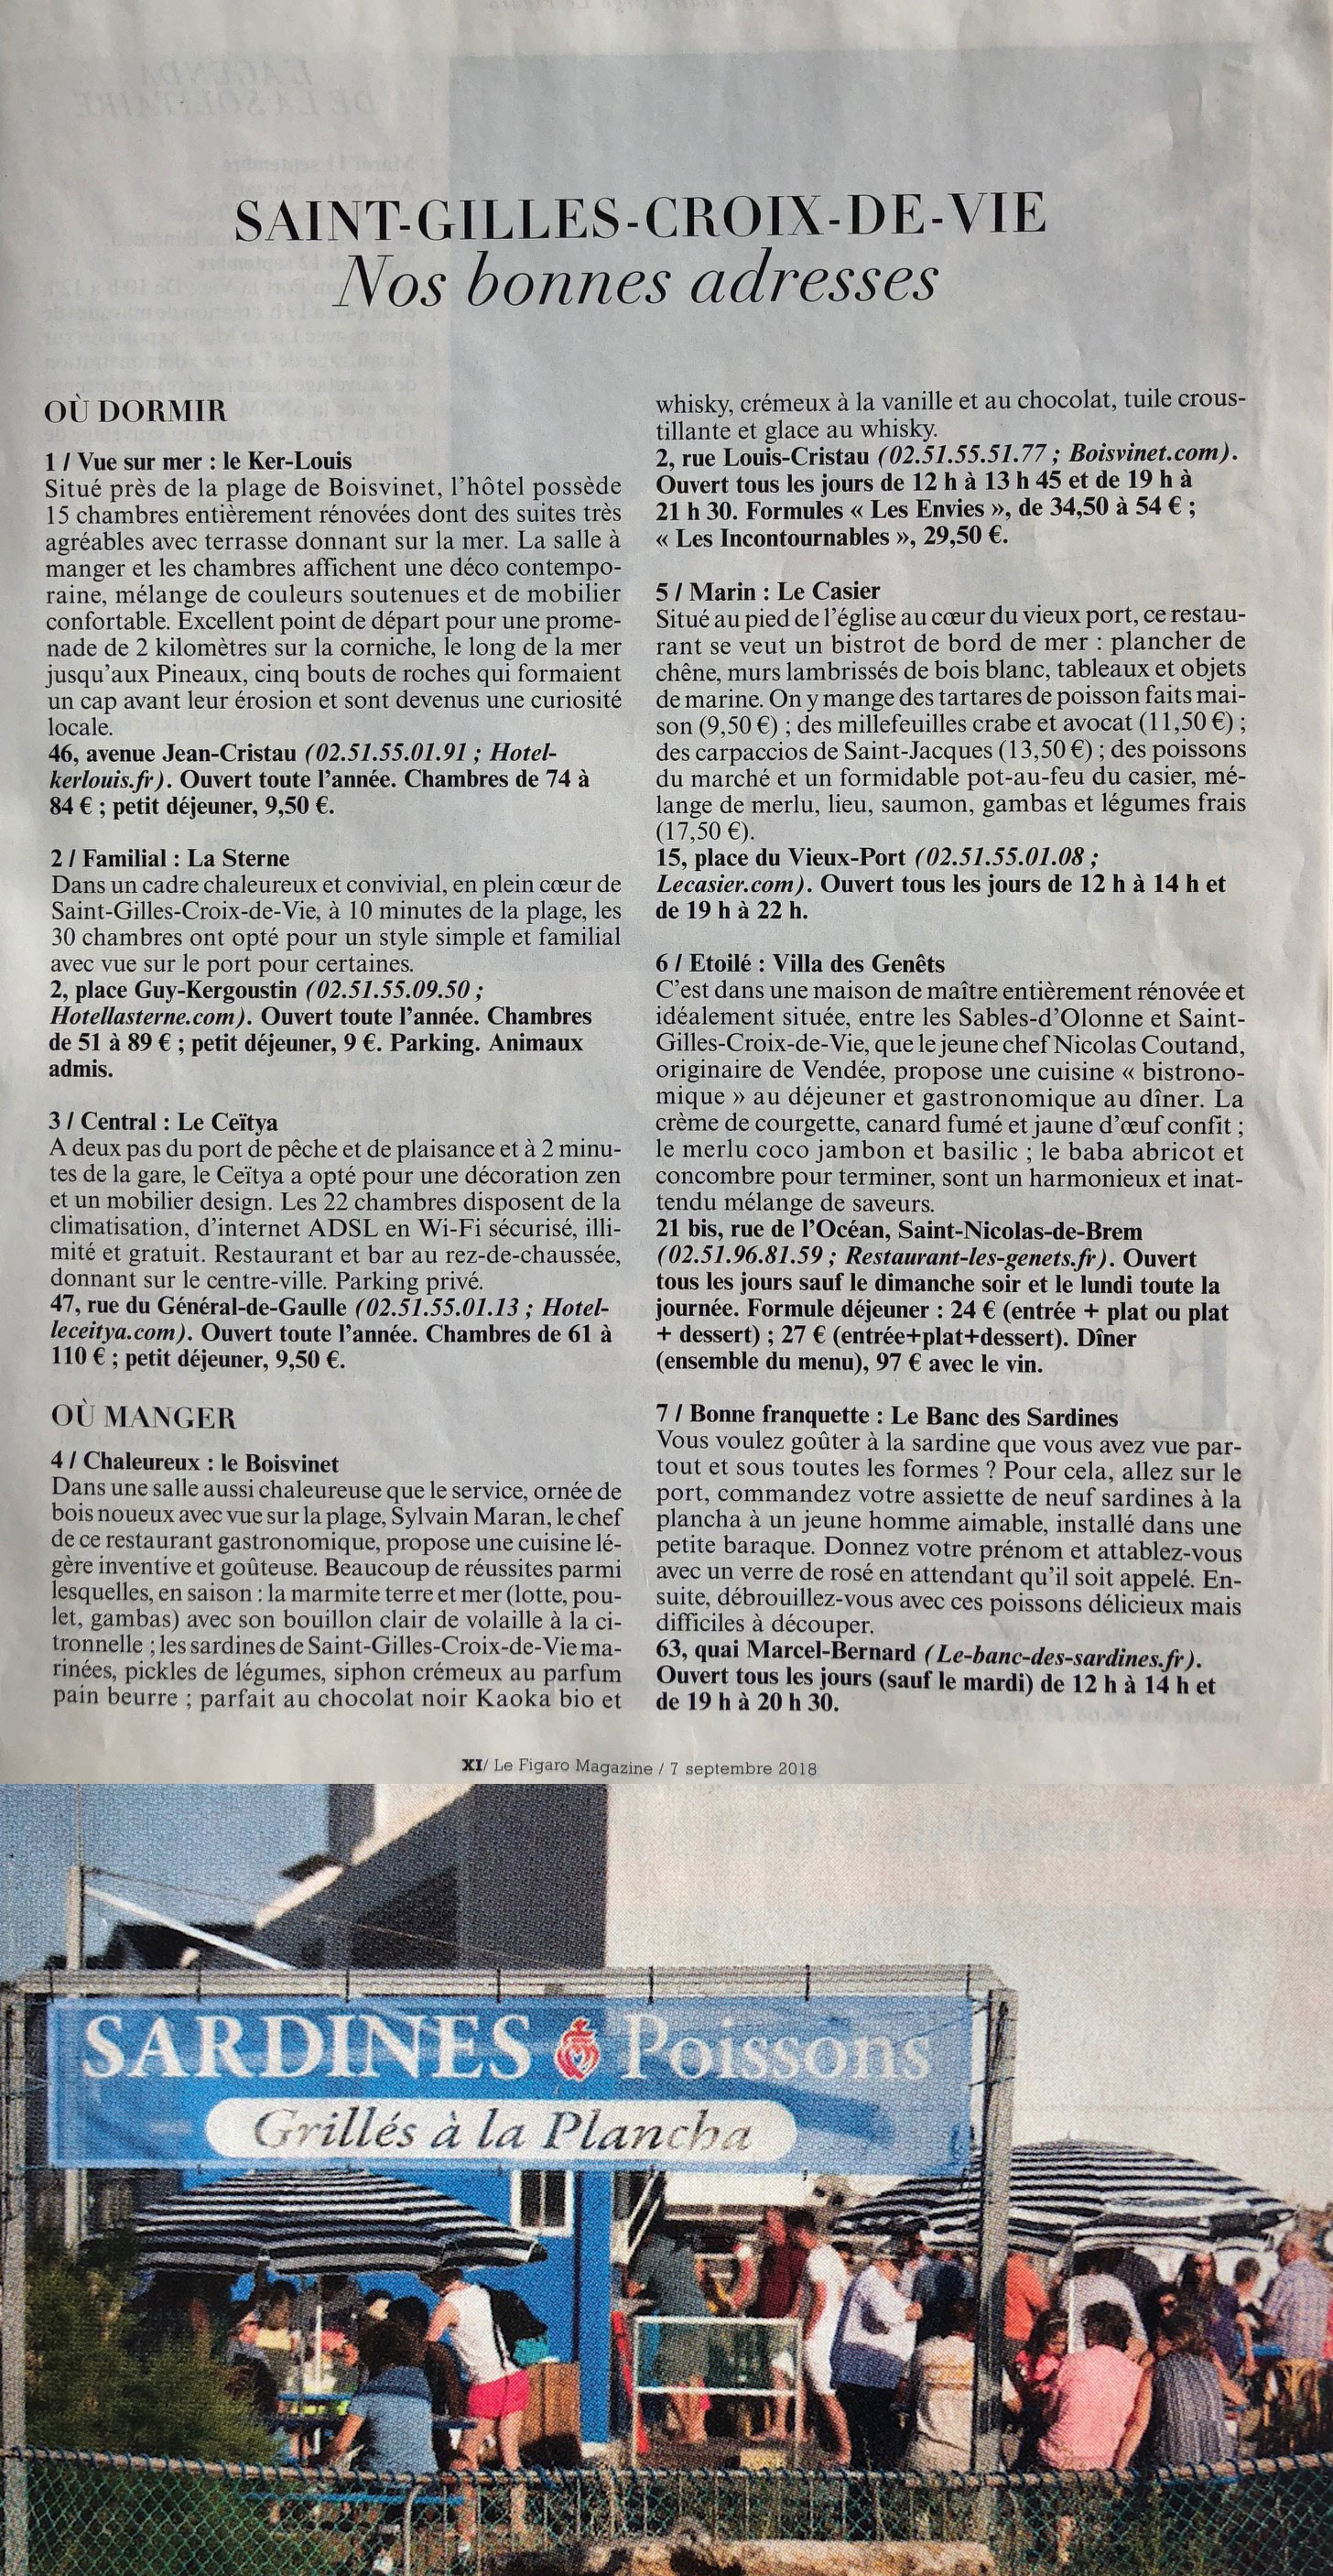 Figaro Magazine - Saint-Gilles-Croix-de-Vie - 7 septembre 2018